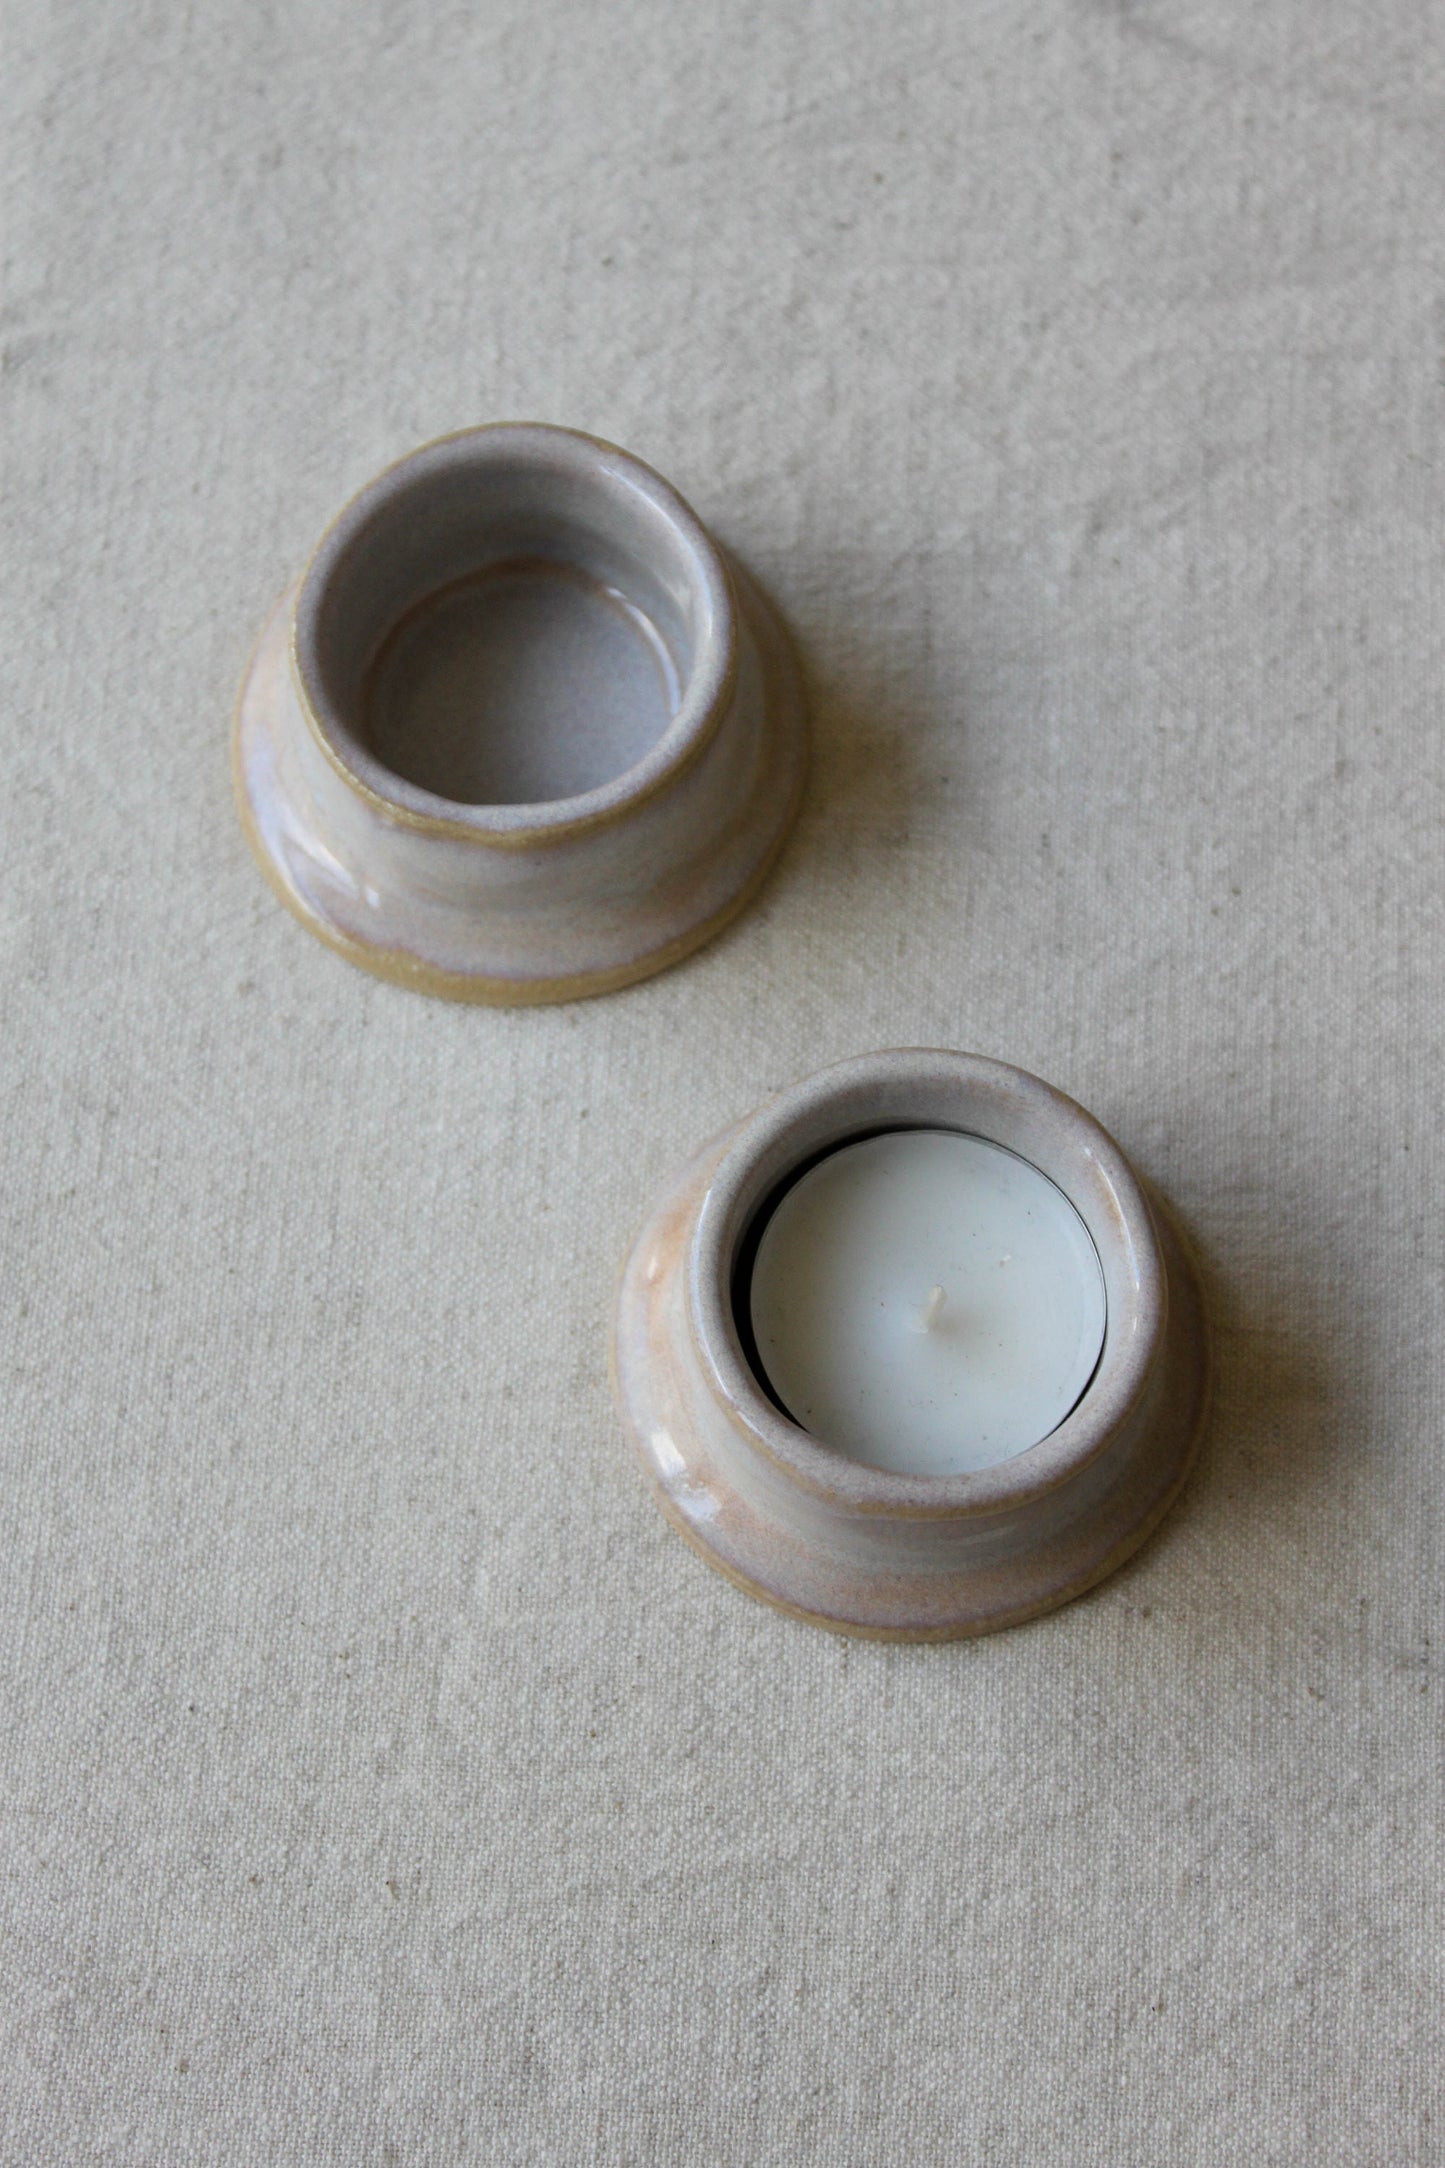 Sonder-Edition: Teelichthalter aus Keramik in Opal-Lila Glasur